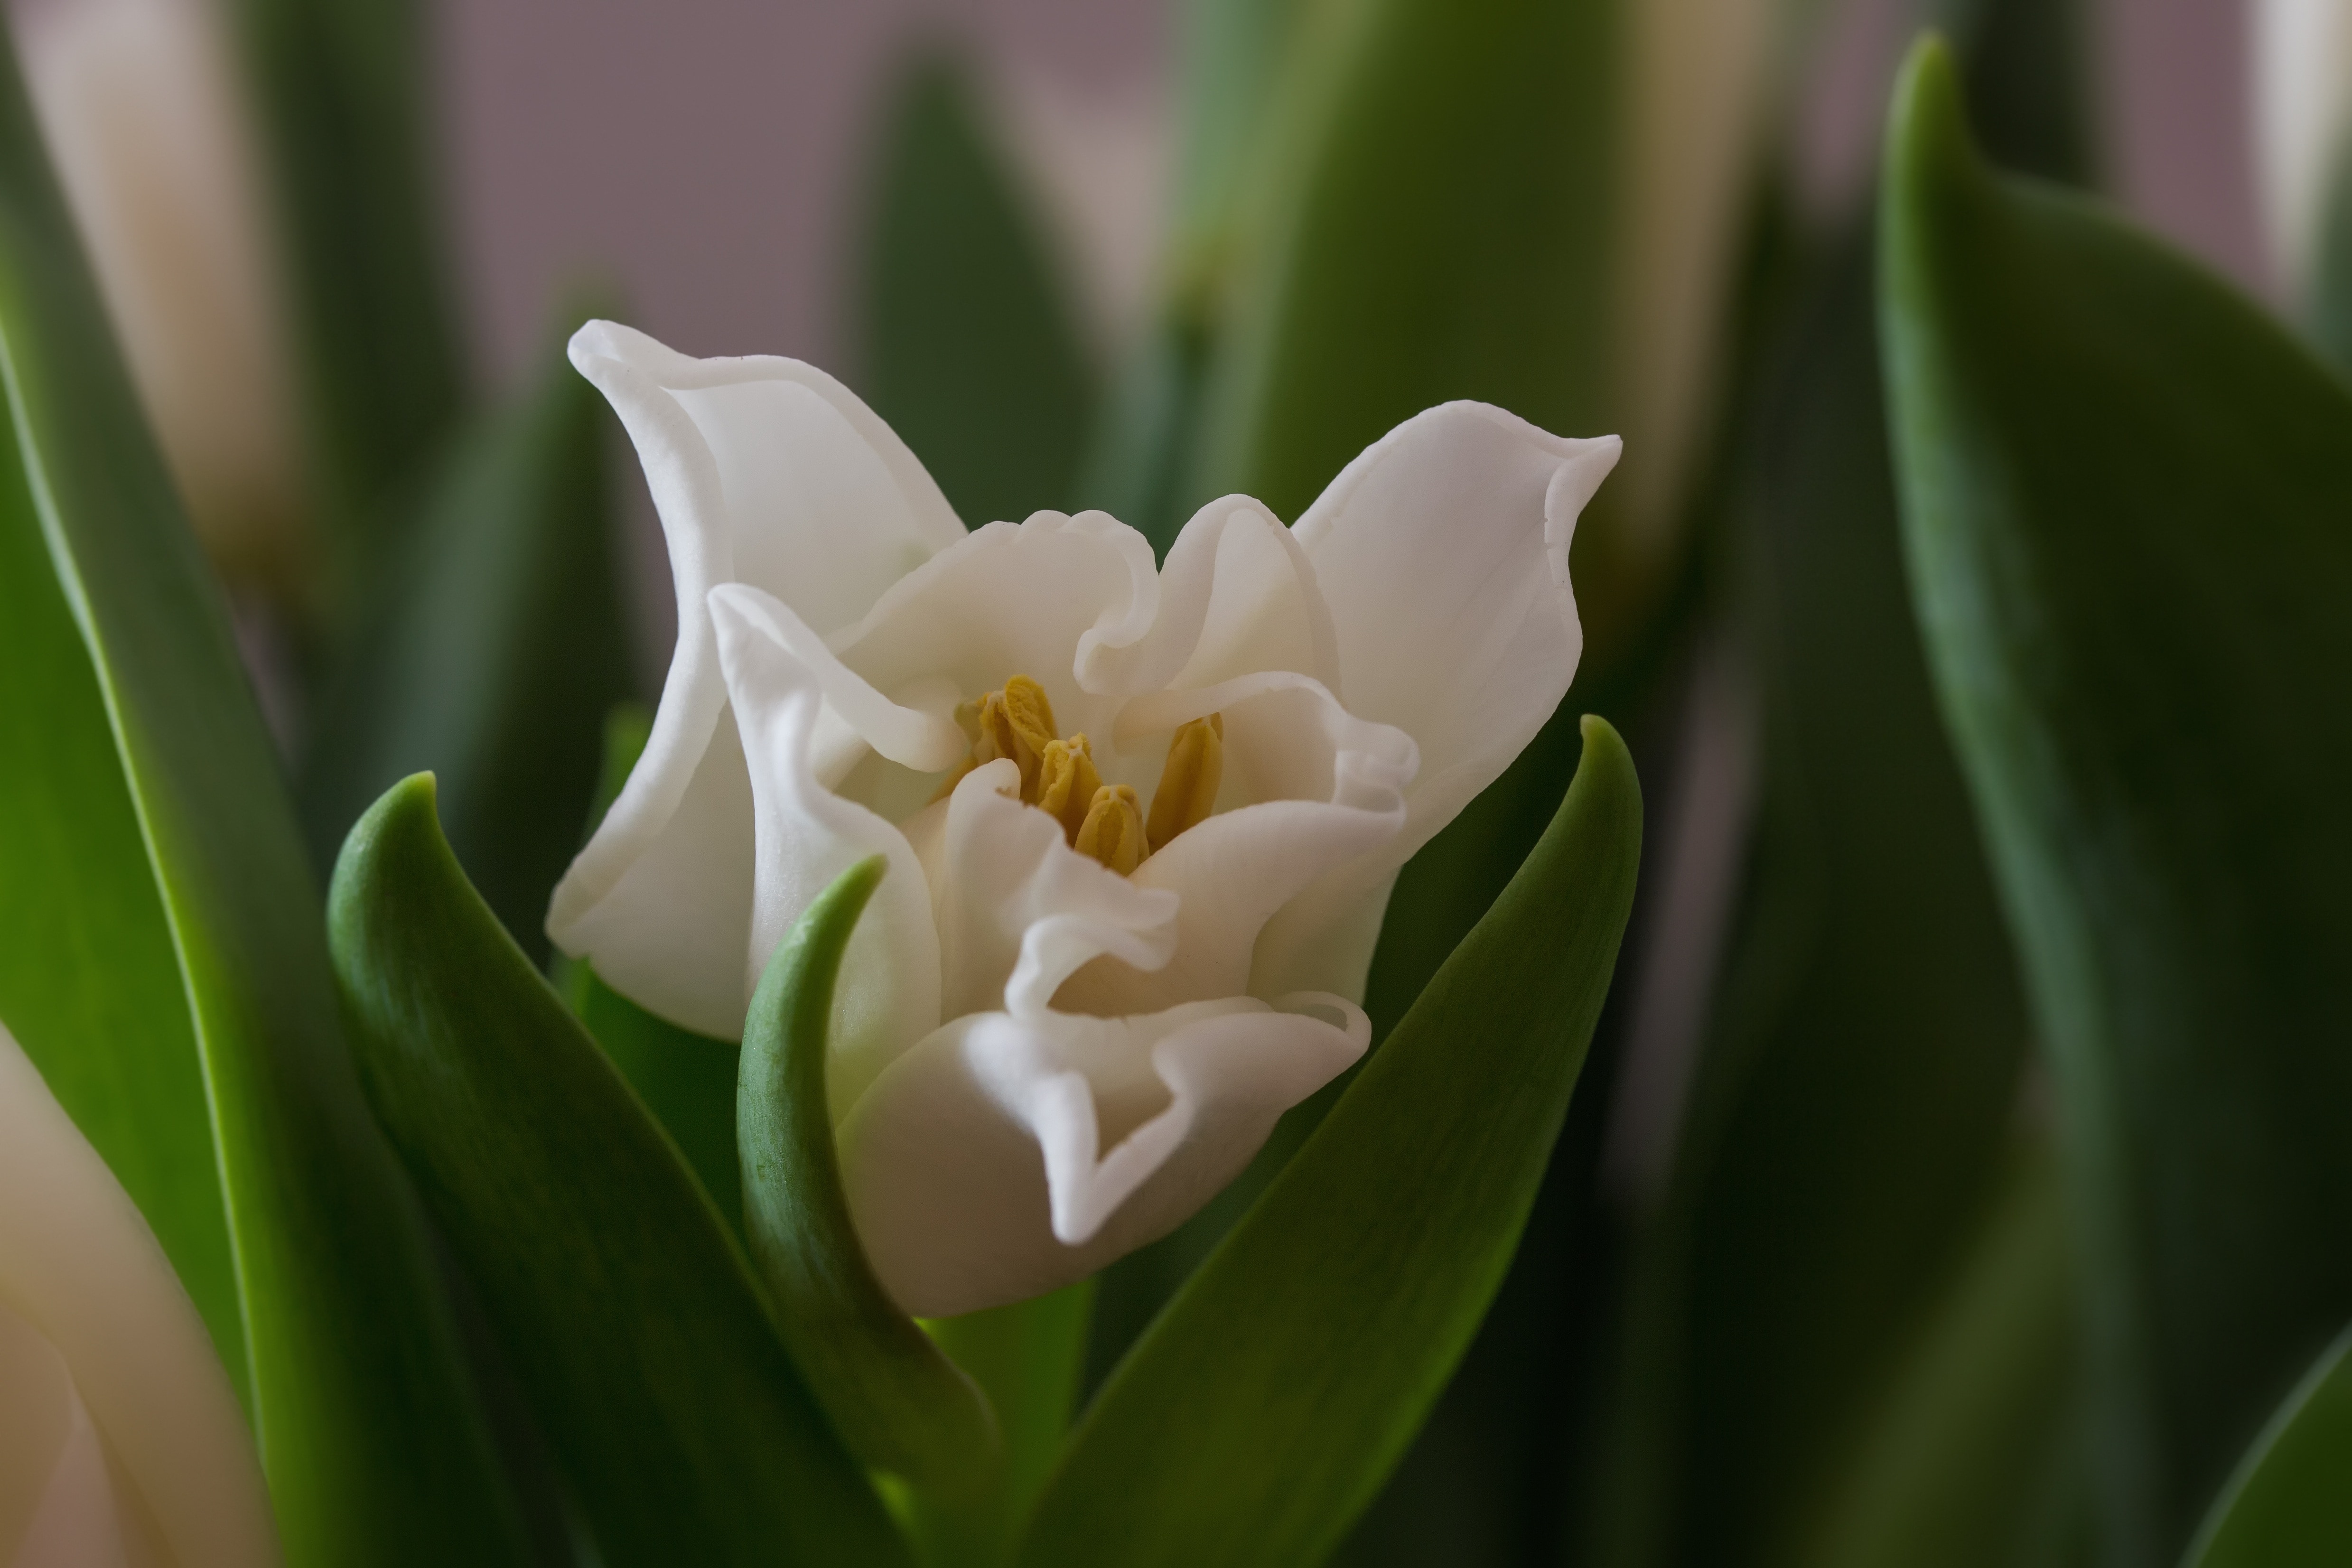 White Tulips, Spring, Tulips, flower, petal